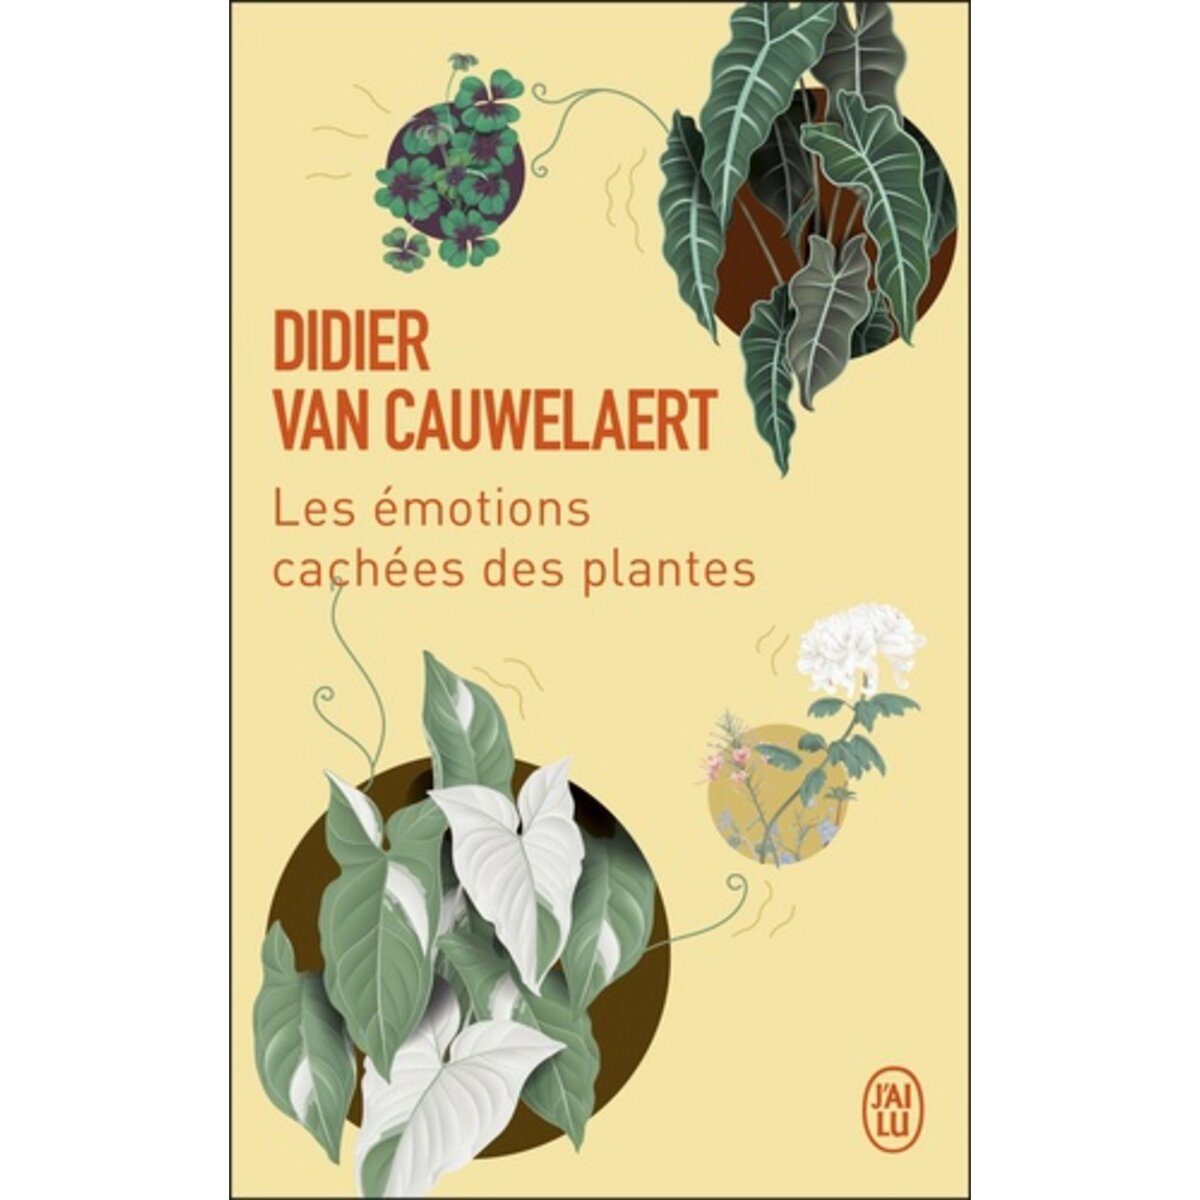  LES EMOTIONS CACHEES DES PLANTES, Van Cauwelaert Didier